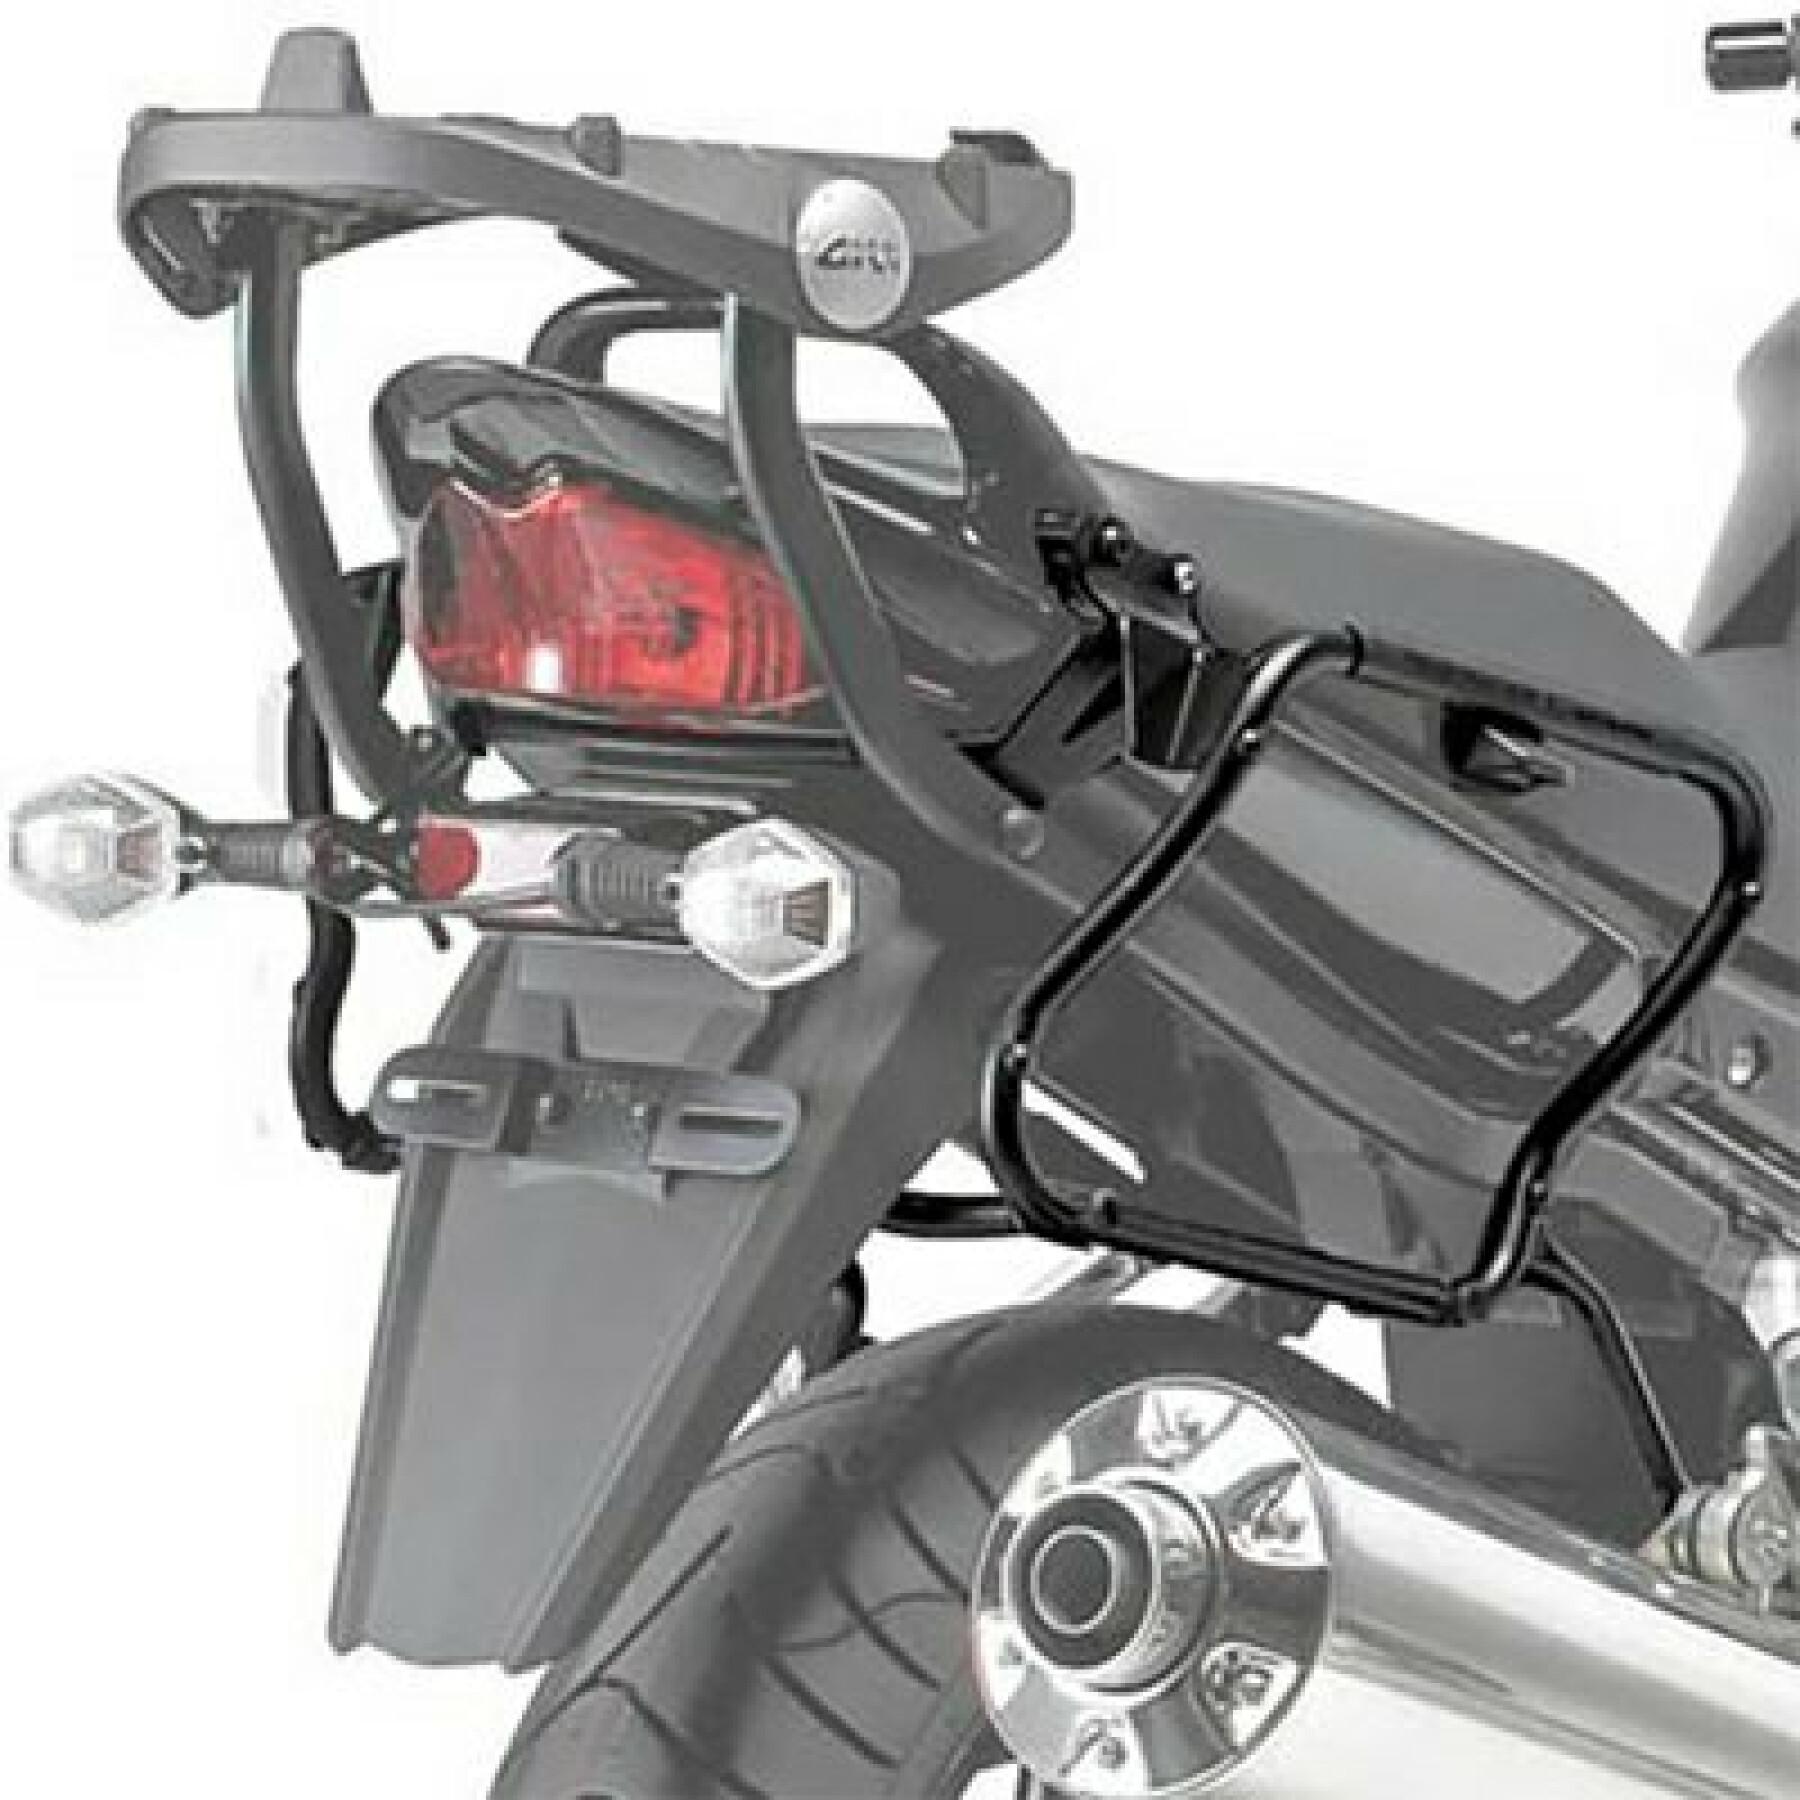 Soporte de la maleta lateral de la moto Givi Monokey Suzuki Gsf 1250 Bandit/Bandit S (07 À 11)